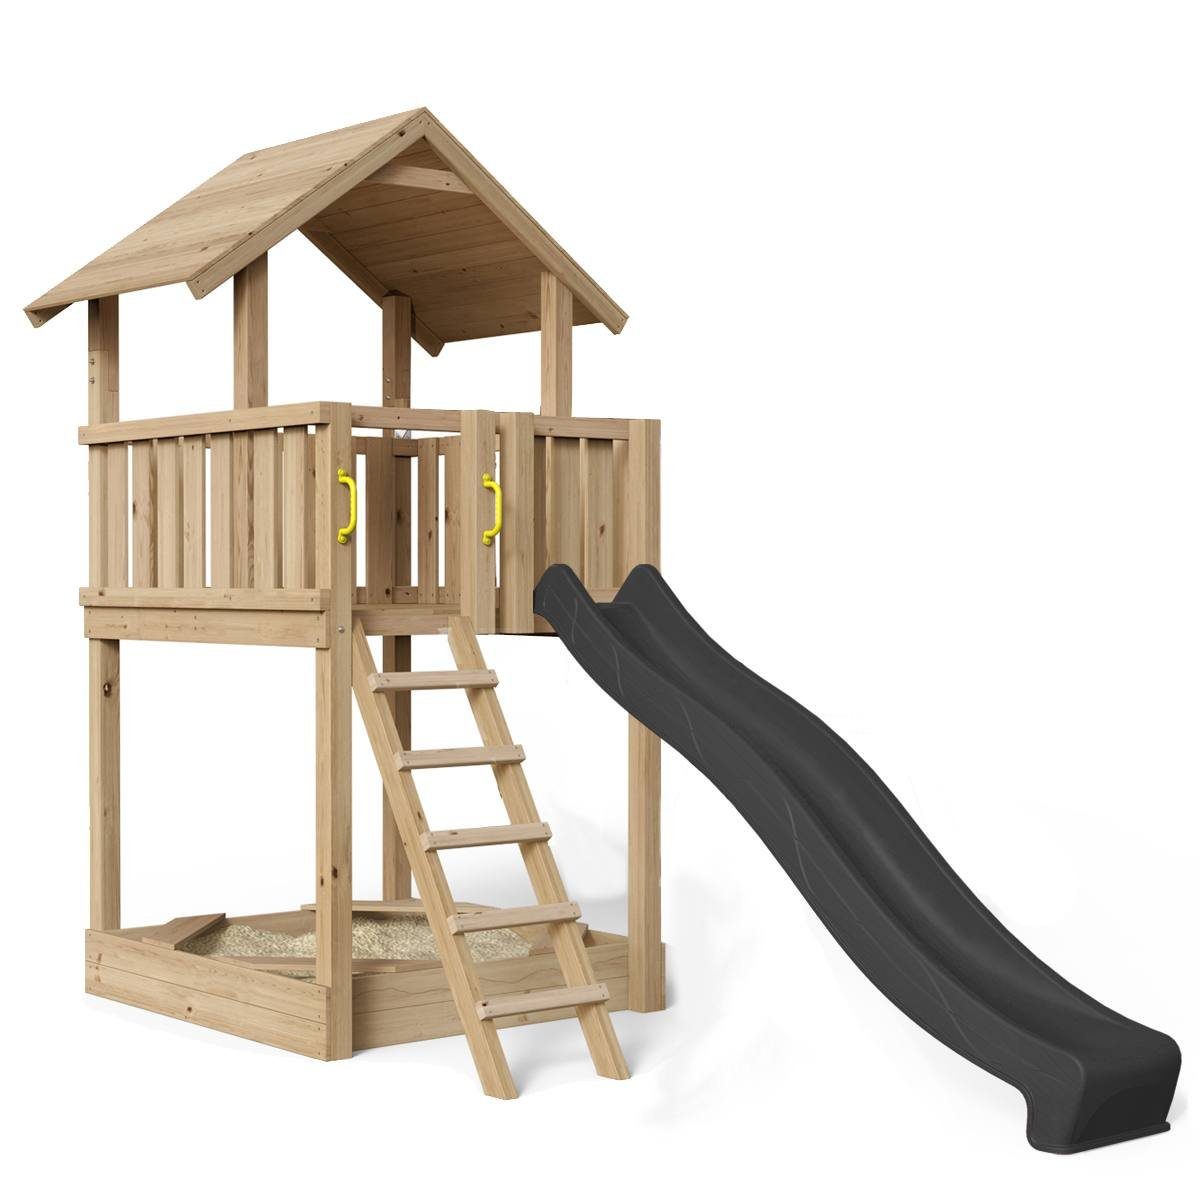 SCHEFFER Outdoor Toys Spielturm Spielturm Mia - M1 Lärche, naturbelassenes Lärchenholz